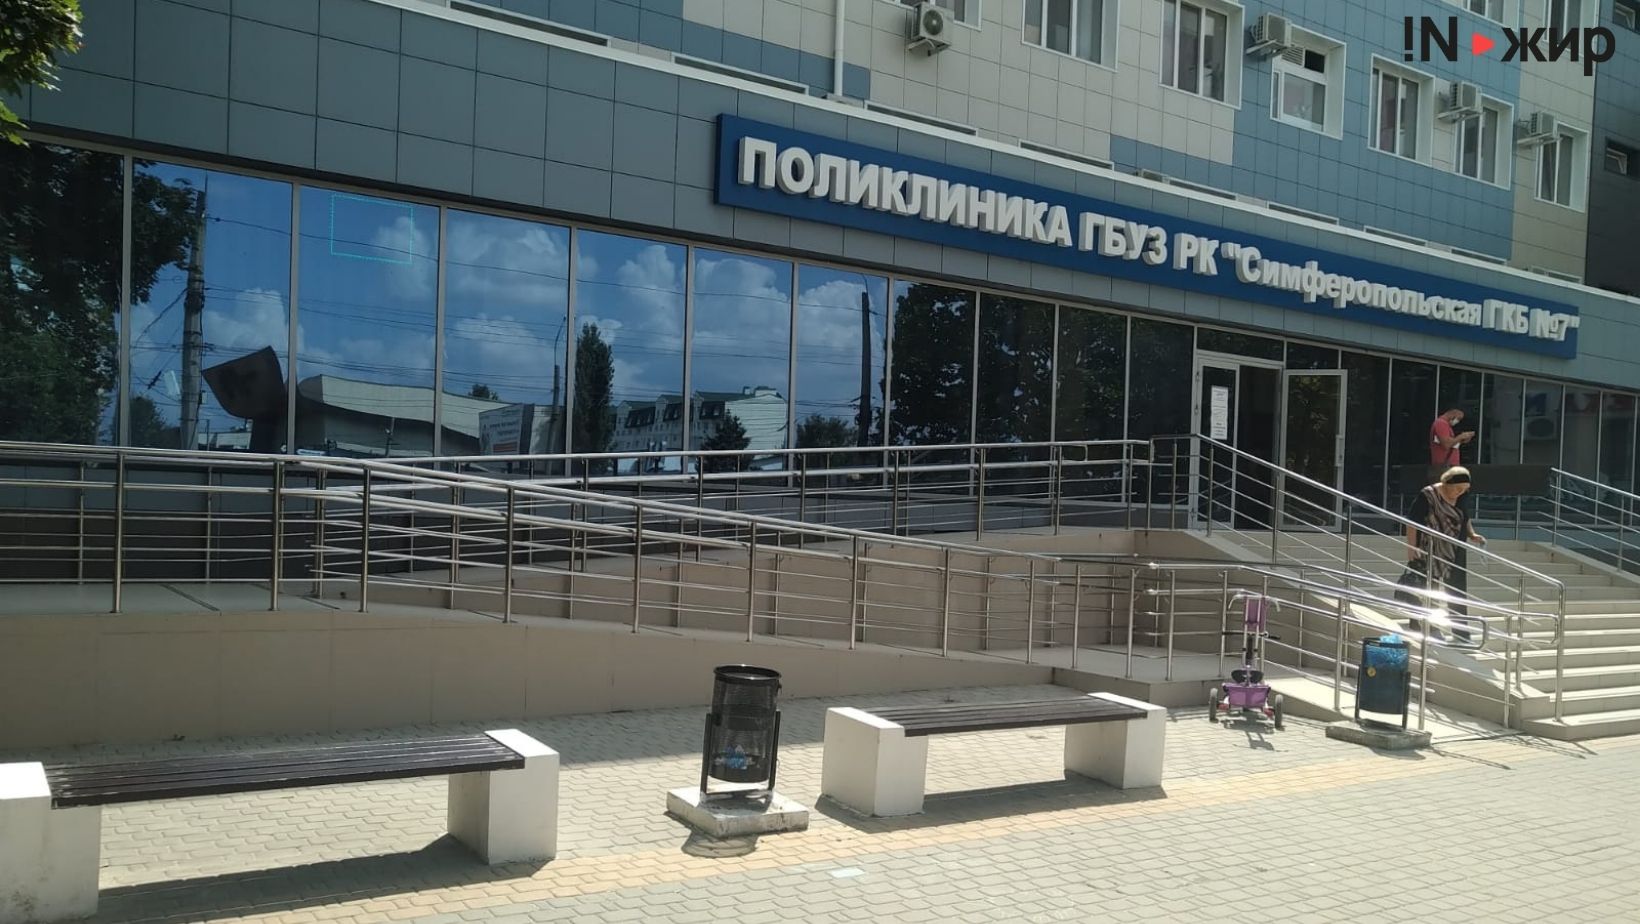 Поликлиника 7-й городской больницы г. Симферополя. Фото: INжир Media